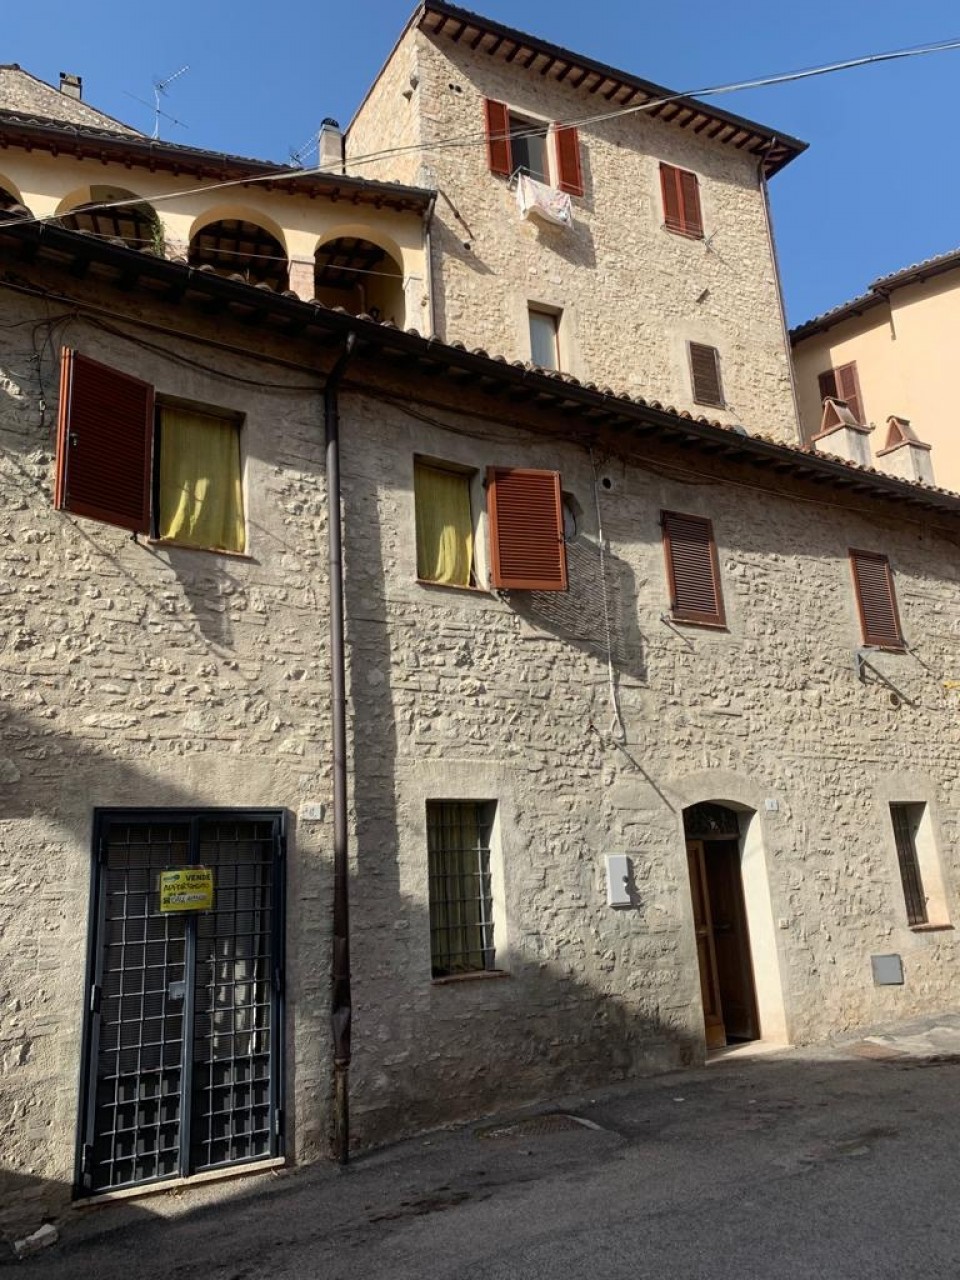 Palazzo / Stabile in vendita a Arrone, 5 locali, prezzo € 99.000 | CambioCasa.it